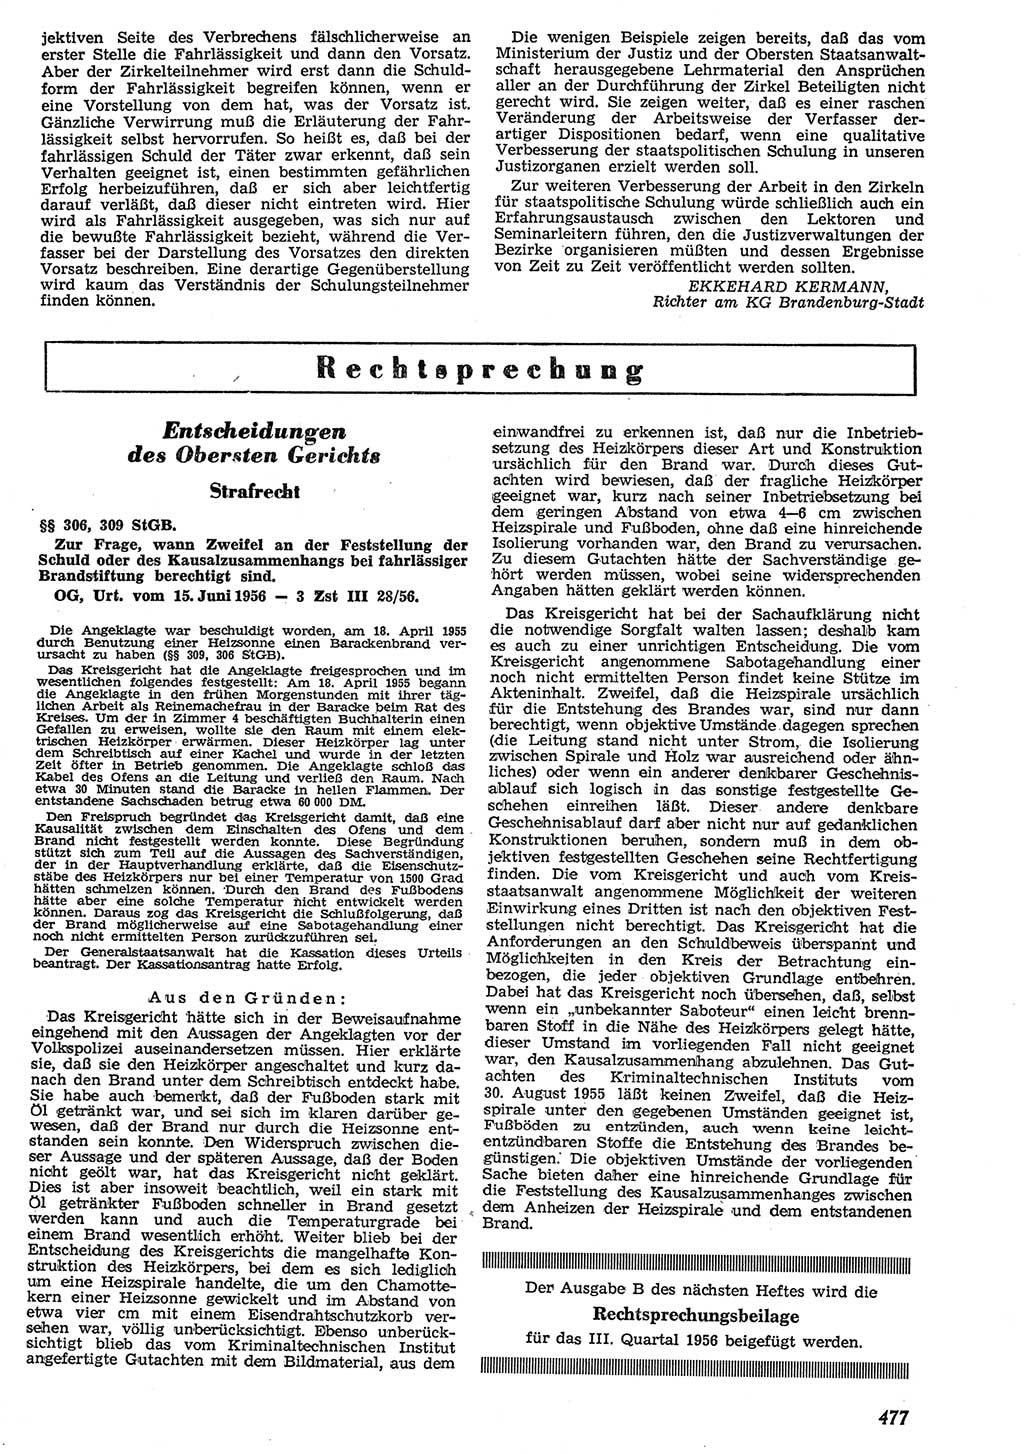 Neue Justiz (NJ), Zeitschrift für Recht und Rechtswissenschaft [Deutsche Demokratische Republik (DDR)], 10. Jahrgang 1956, Seite 477 (NJ DDR 1956, S. 477)